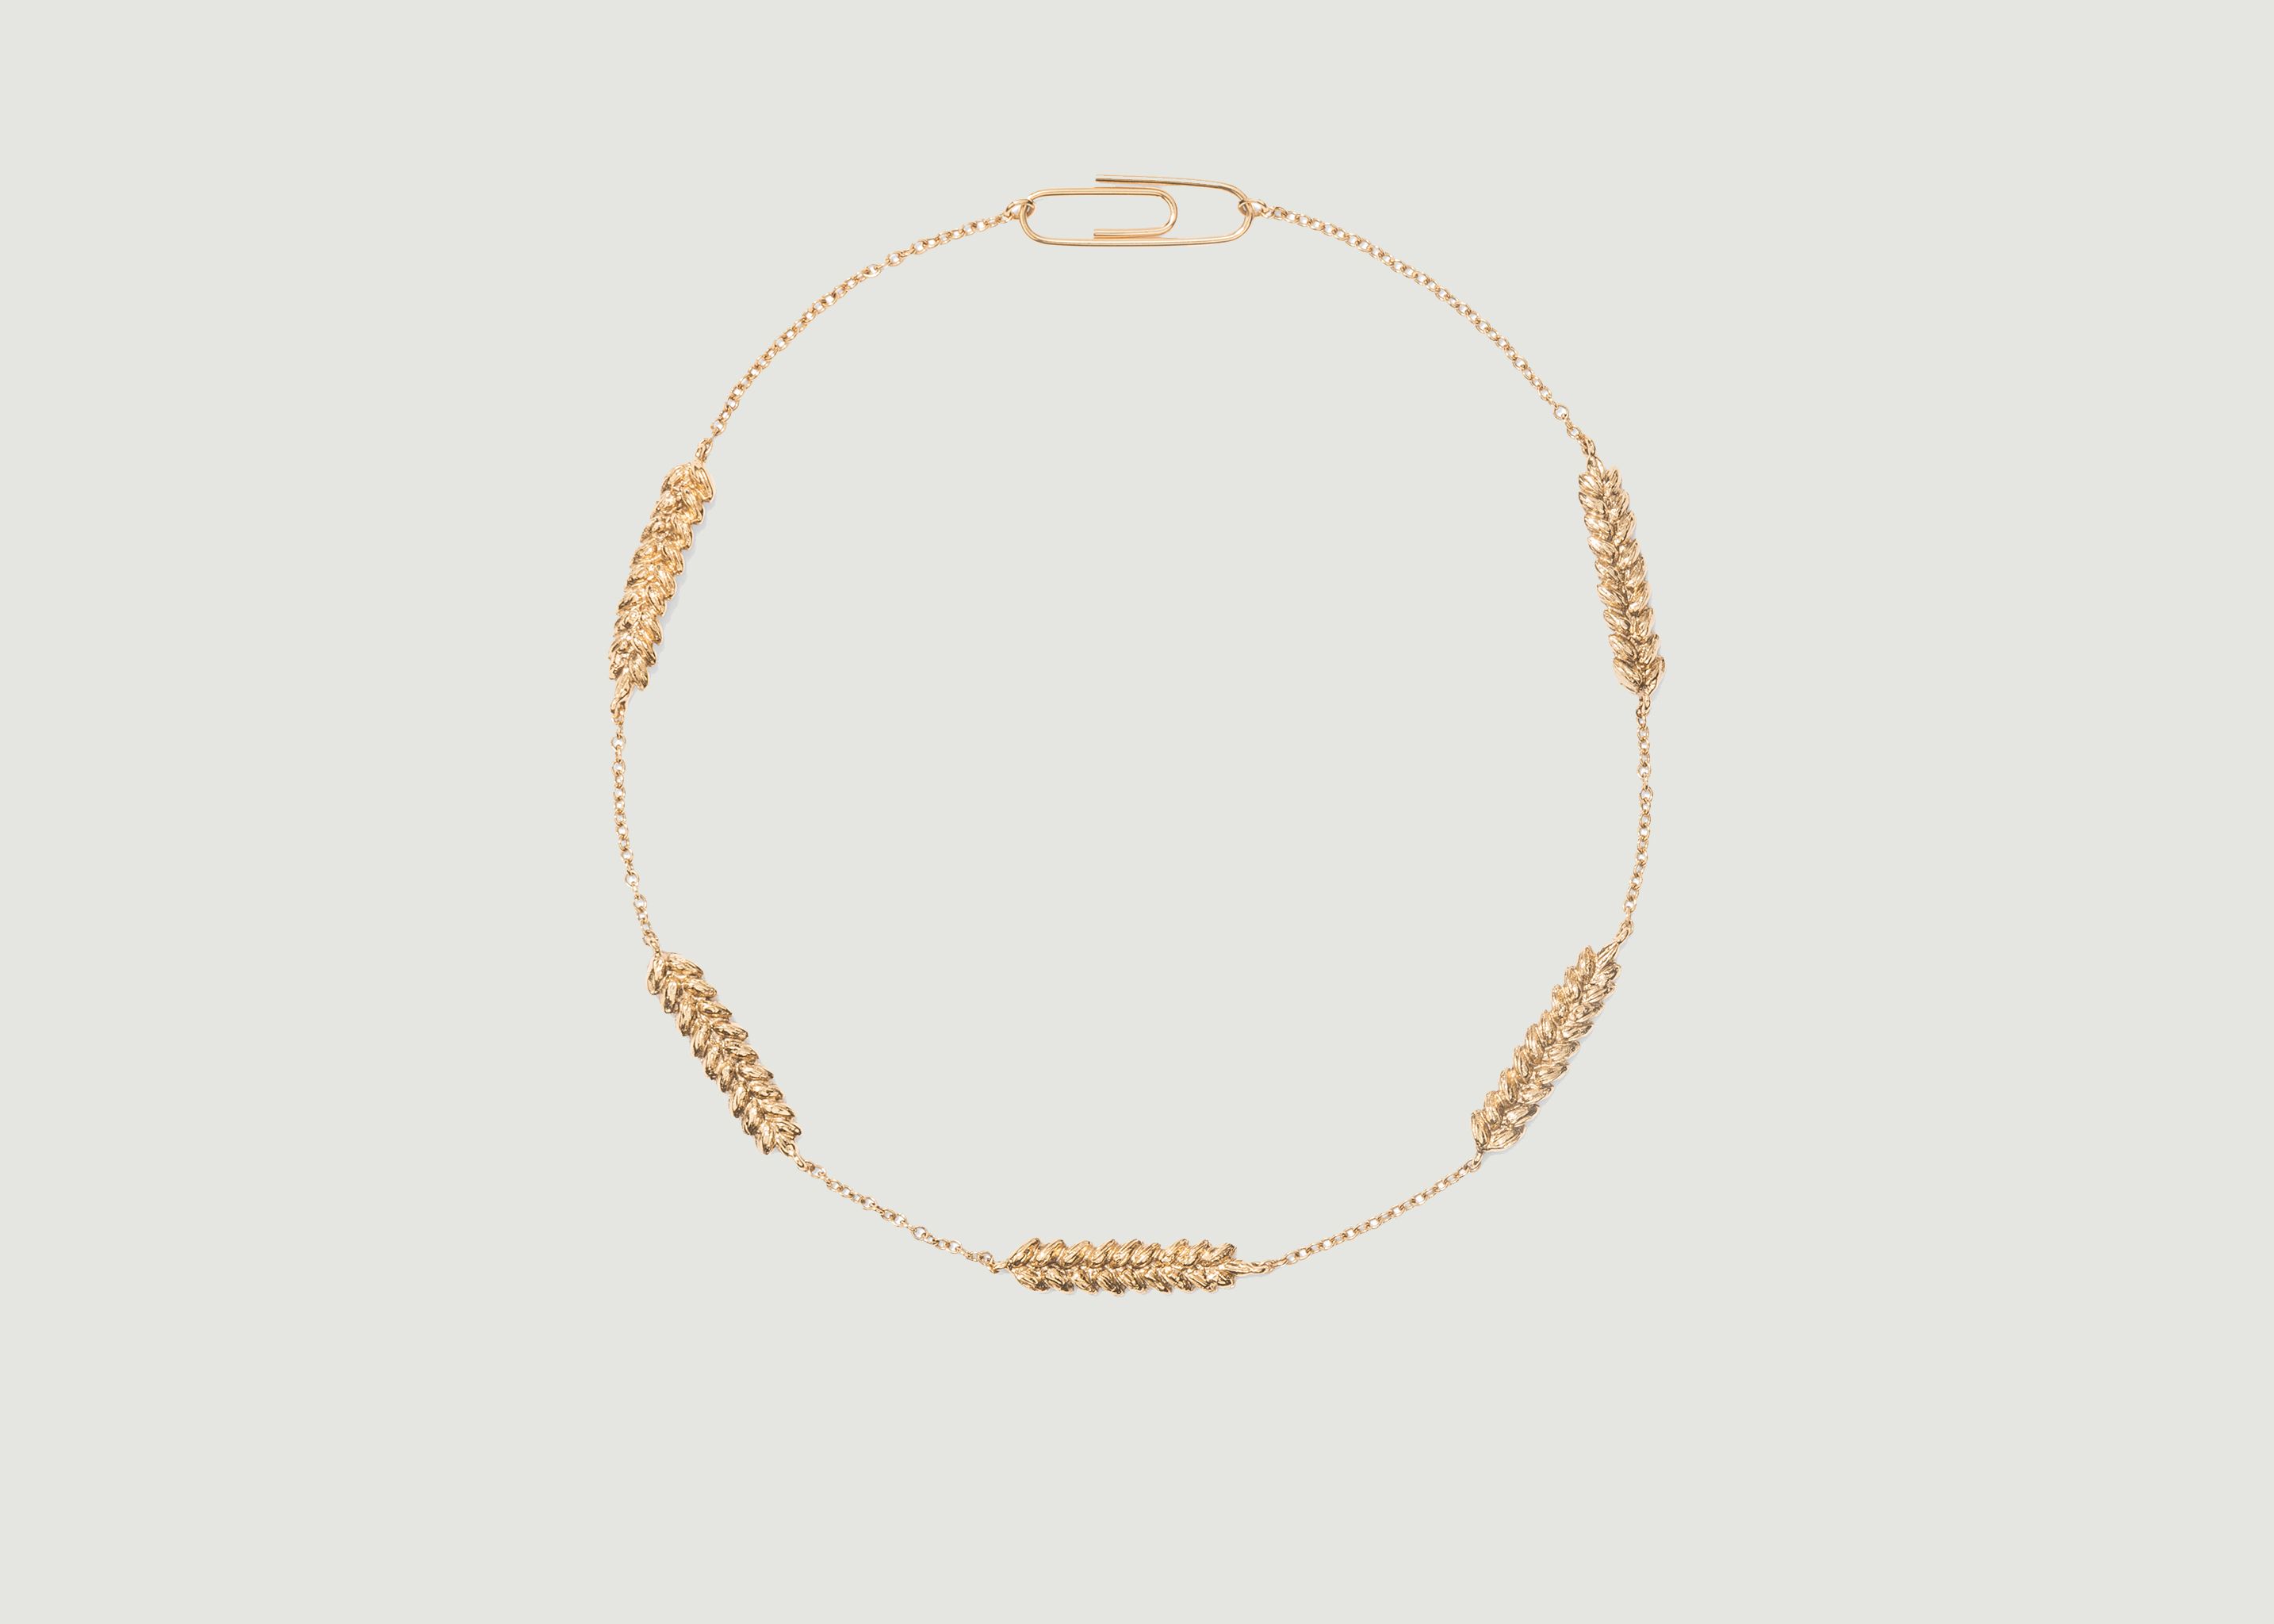 Blé gold plated choker necklace - Aurélie Bidermann